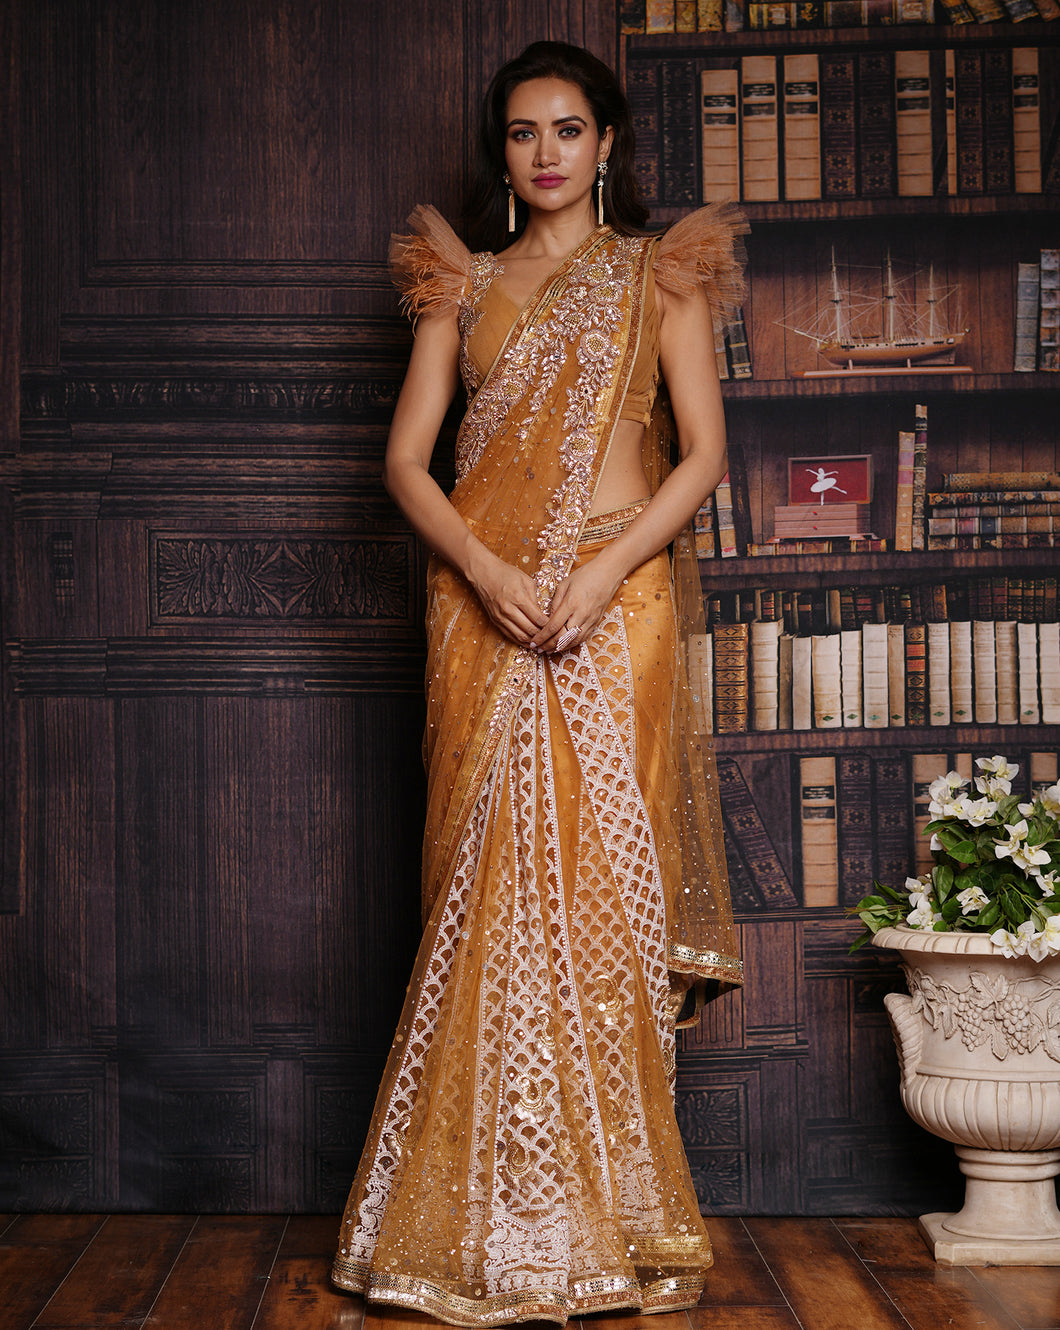 The Ruffle Gold Lucknowi Sari